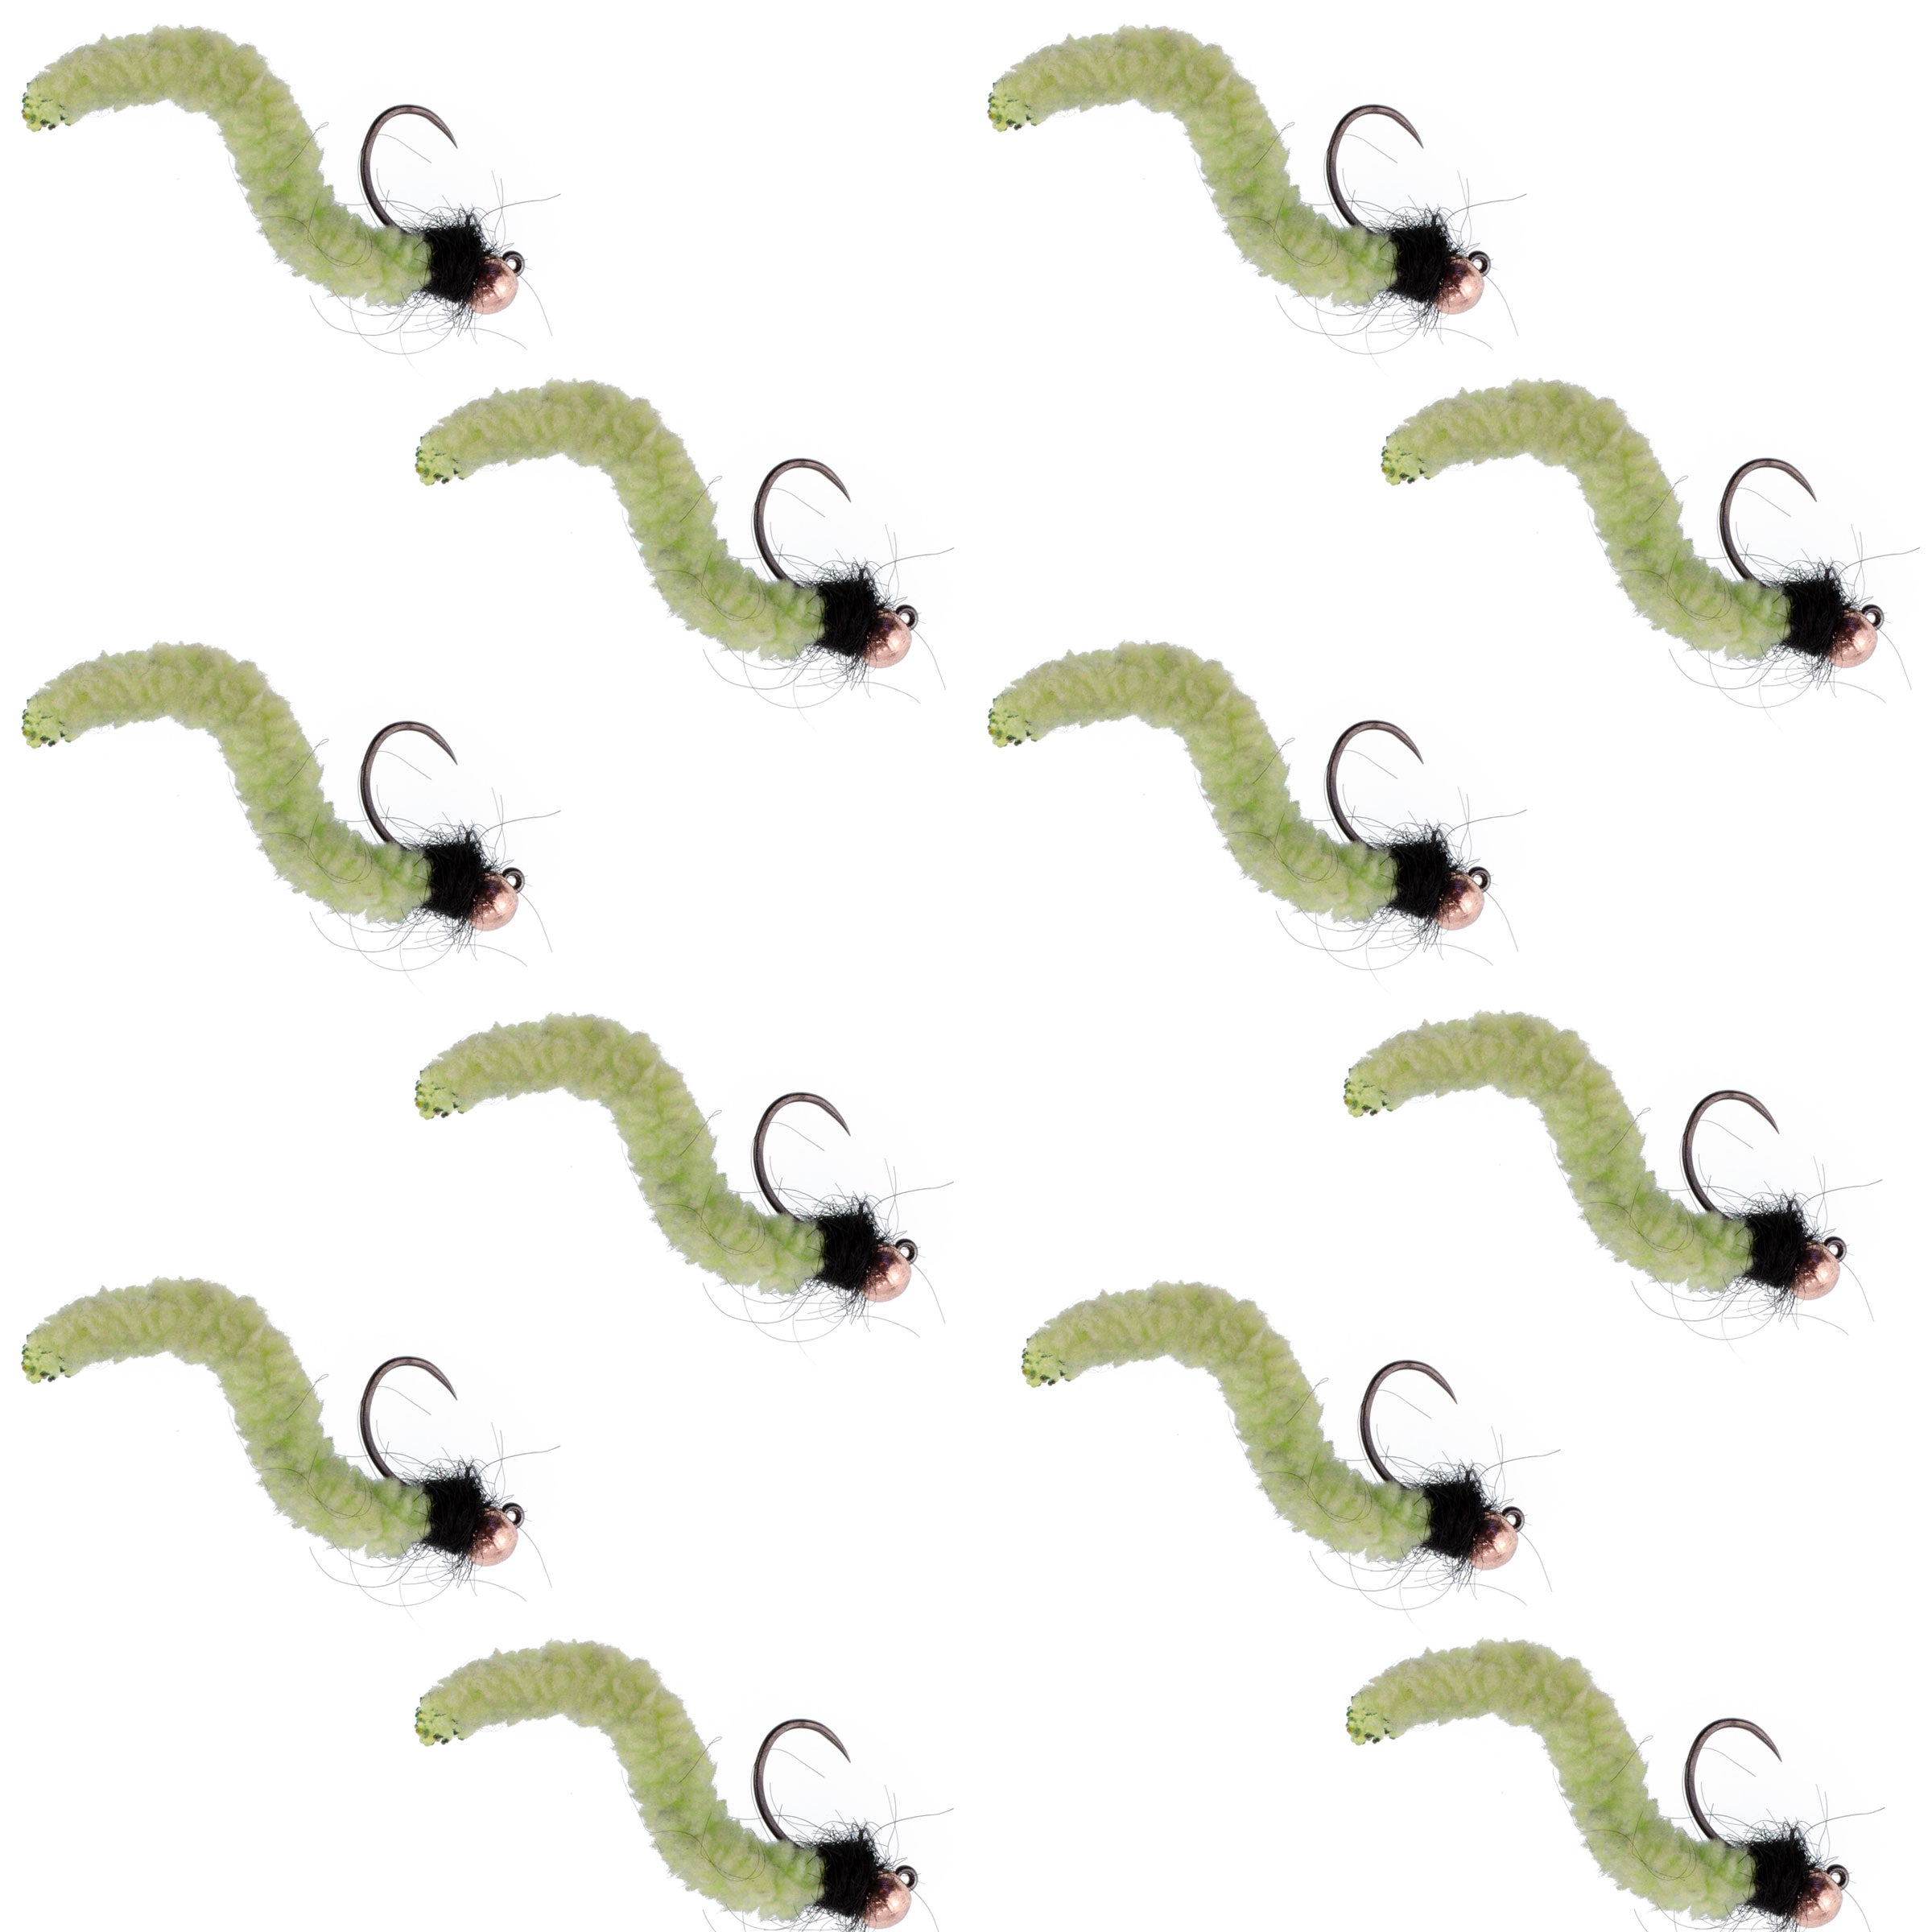 Cuentas de tungsteno Chartreuse Wormy Mop Fly plantilla táctica checa Euro Nymph Barbless Fly - 1 docena de moscas tamaño 12